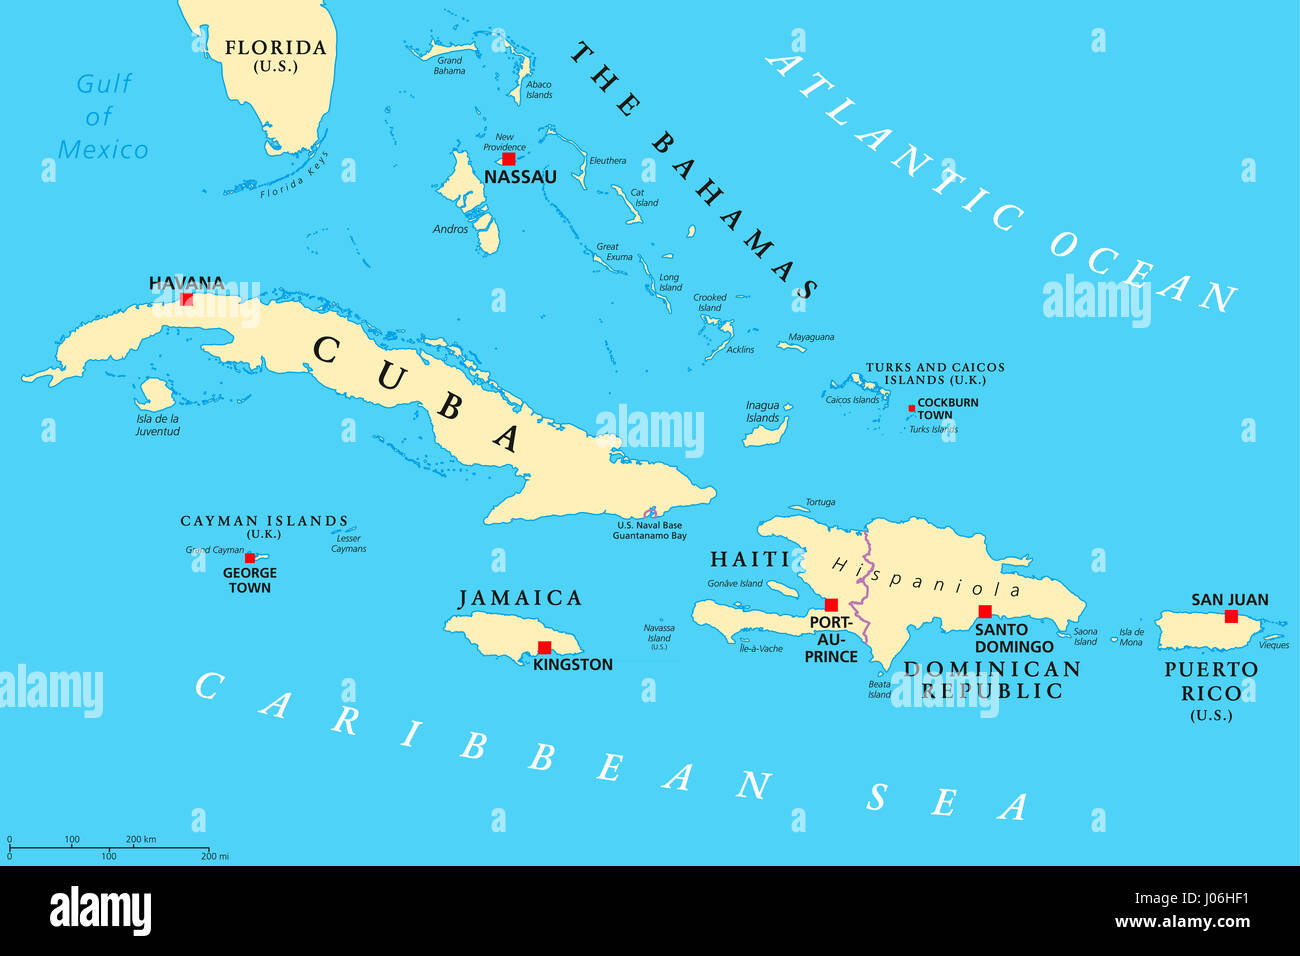 Grandes Antilles carte politique. Des Caraïbes. Cuba, la Jamaïque, Haïti, République dominicaine, Porto Rico, les îles Caïmans, les Bahamas, les îles Turks et Caicos Isl. Banque D'Images